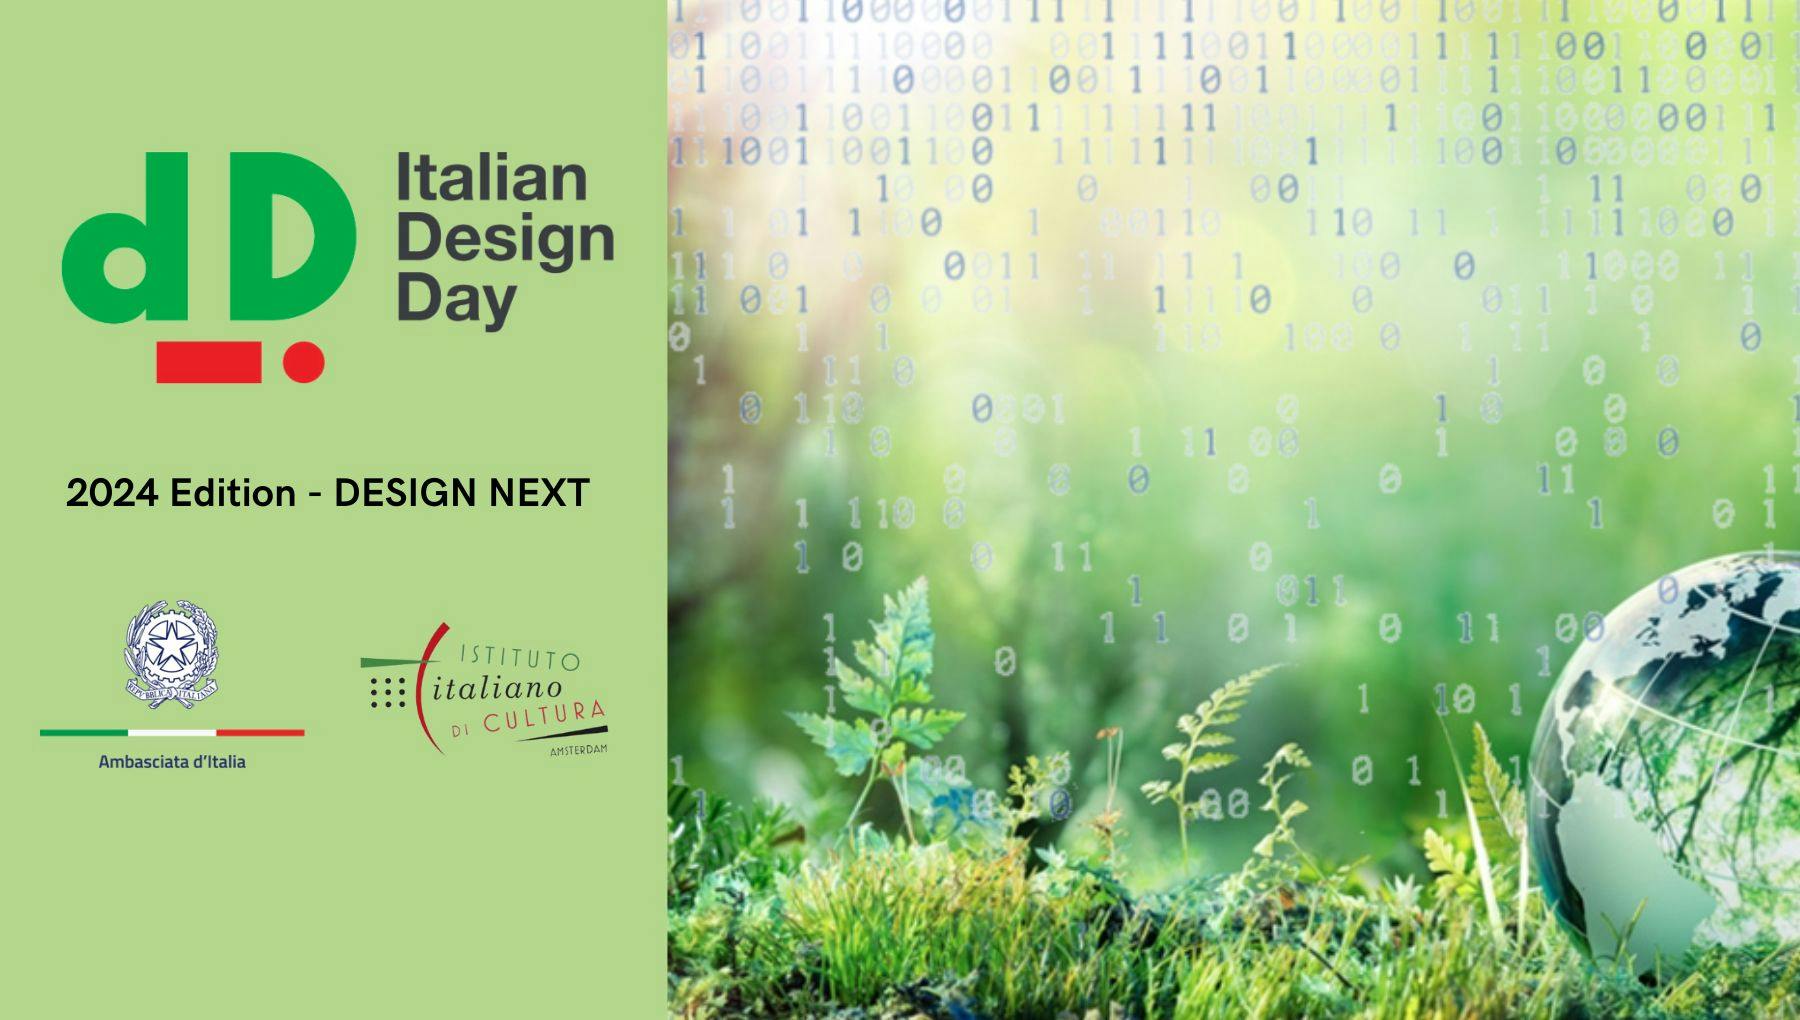 Italian Design Day 2024 - Design Next